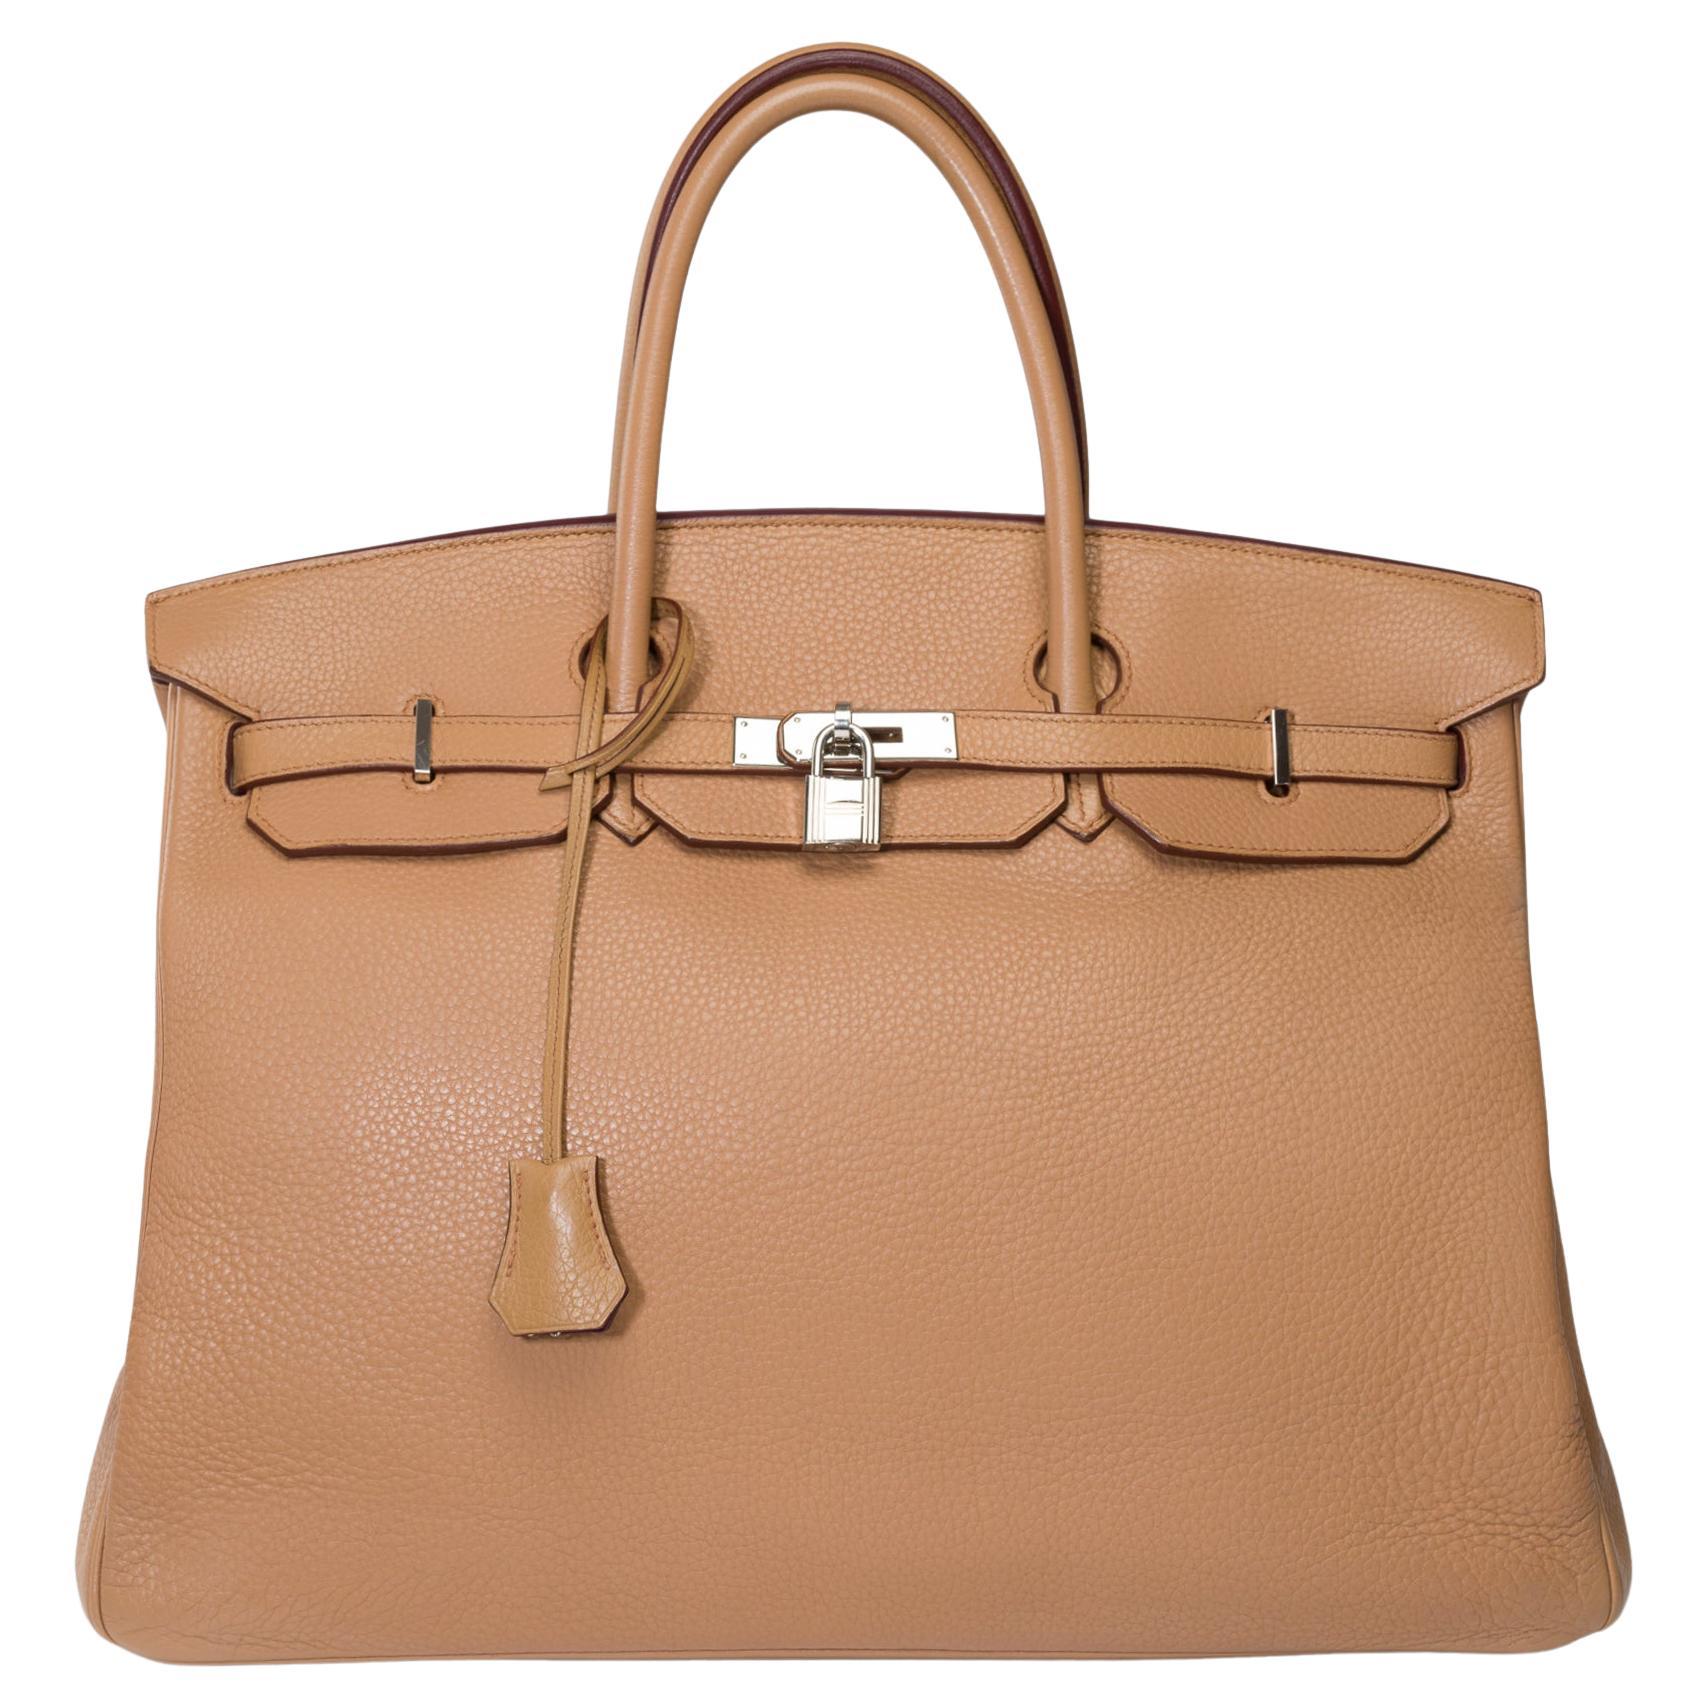 Hermes Birkin 40 handbag in Tabac Togo leather, SHW For Sale